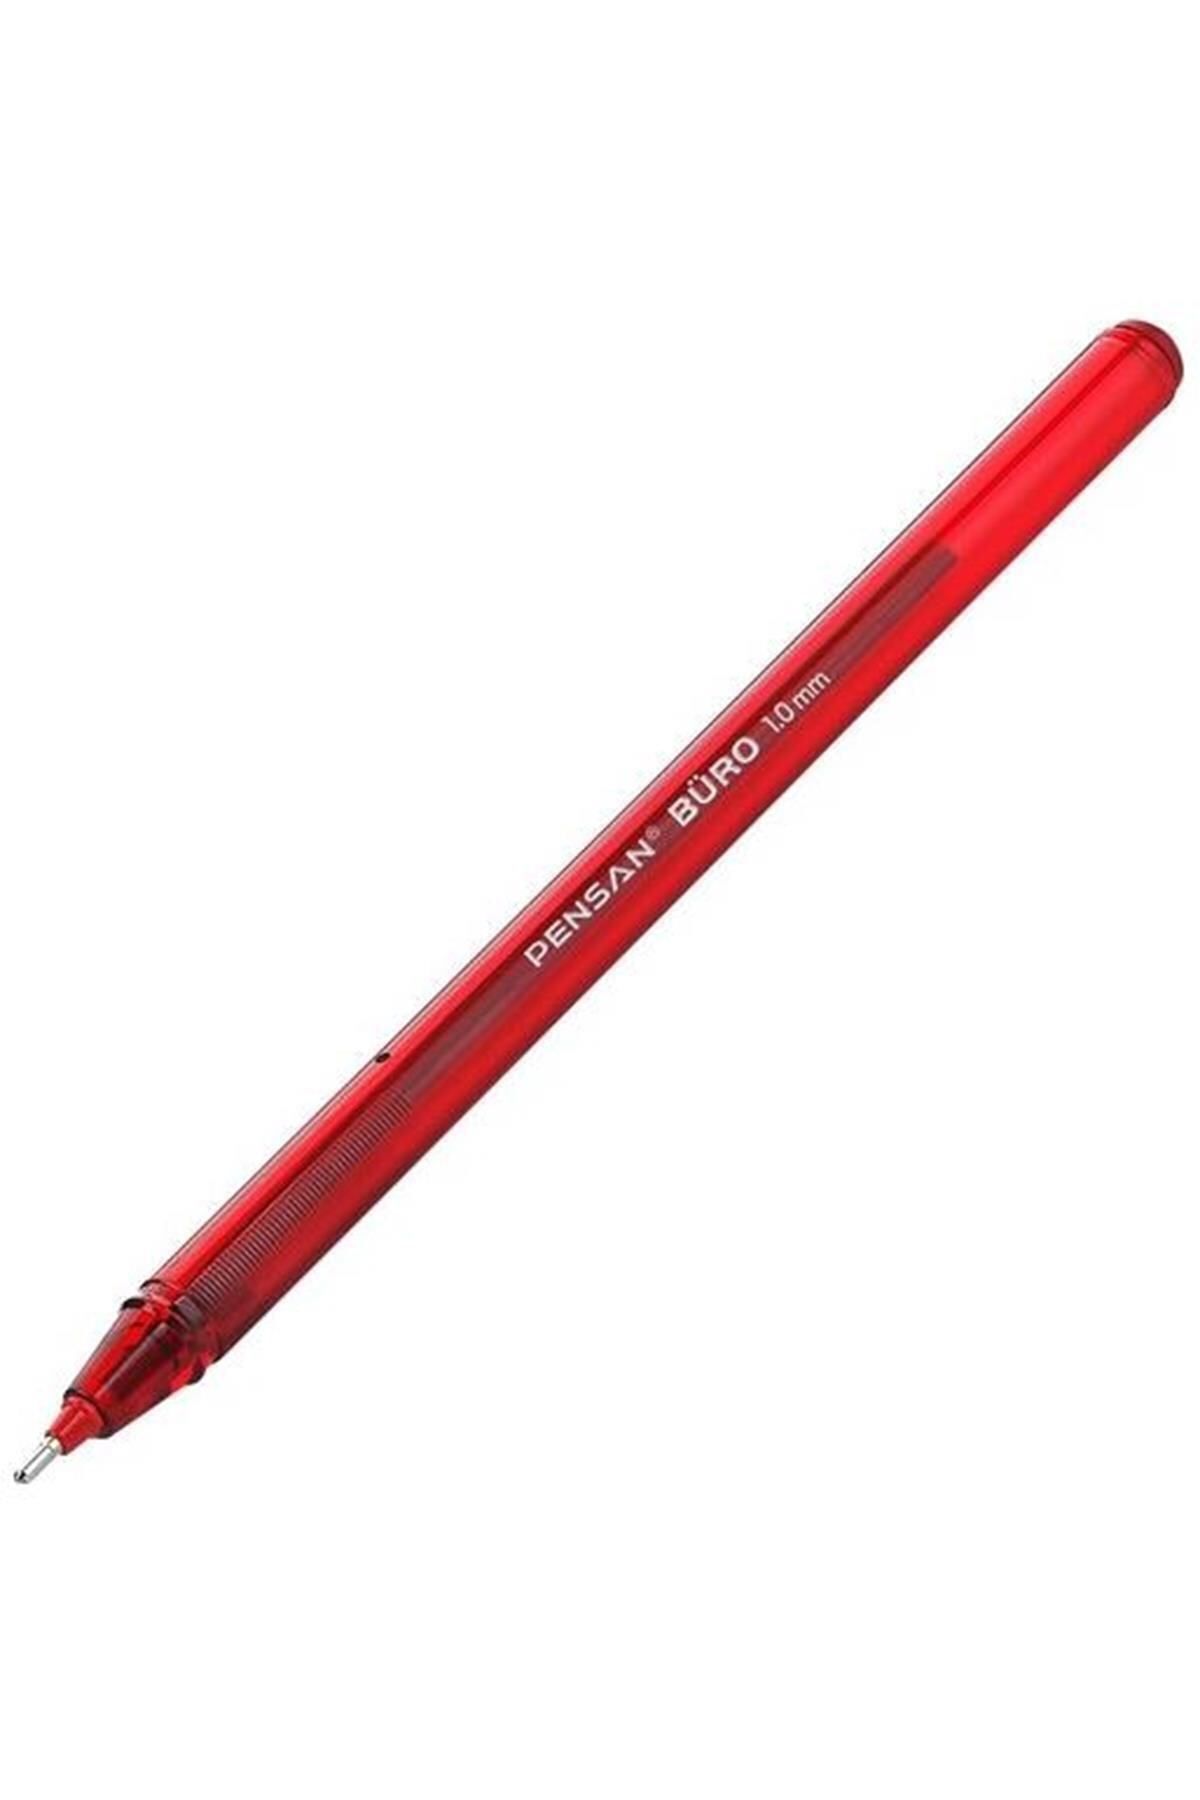 Pensan Büro 1.0 Mm Kırmızı Tükenmez Kalem 12 Adet